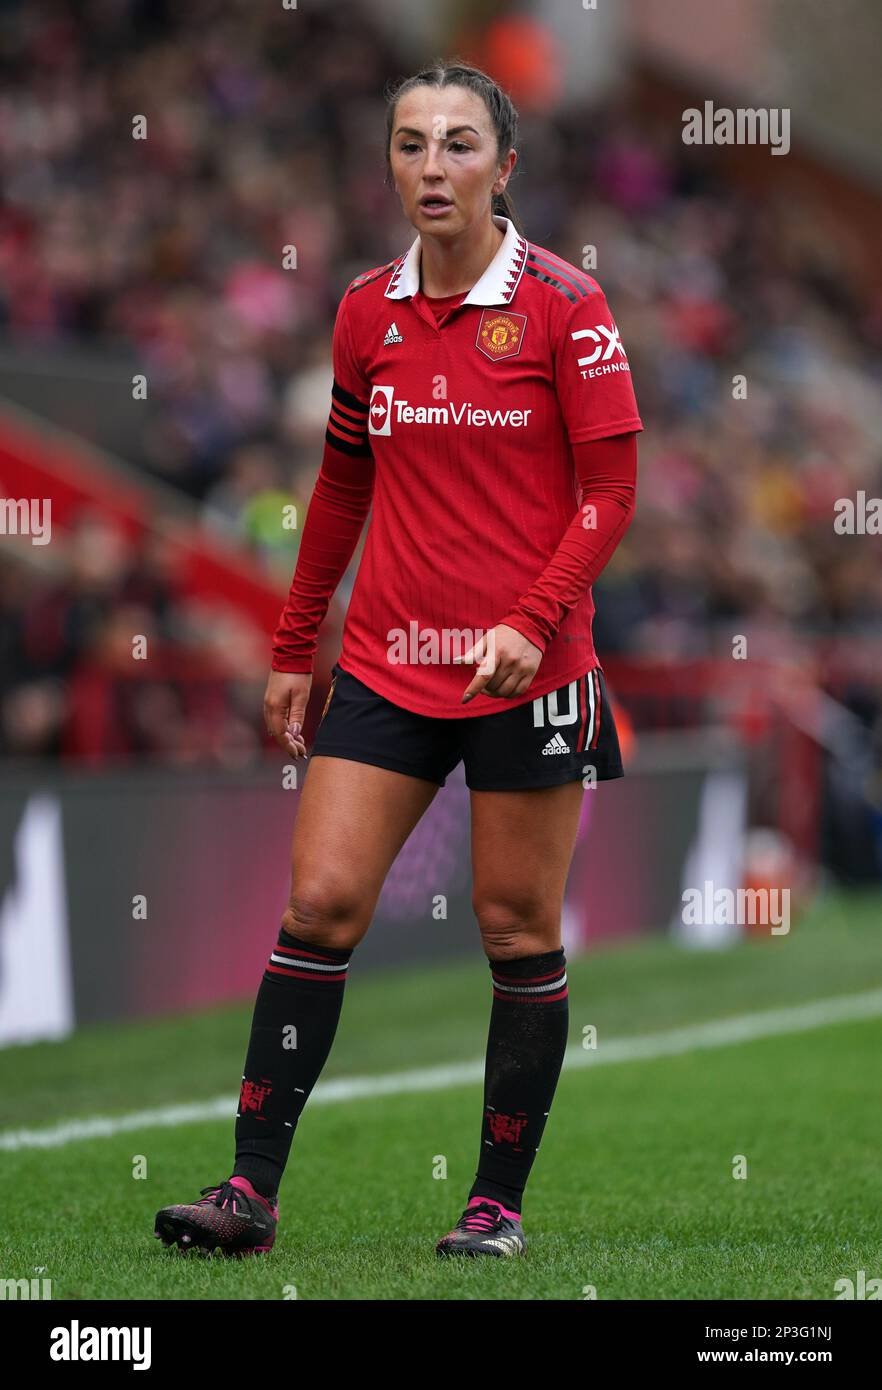 Katie Zelem del Manchester United durante el partido de la Superliga Femenina Barclays en Leigh Sports Village, Manchester. Fecha de la fotografía: Domingo 5 de marzo de 2023. Foto de stock